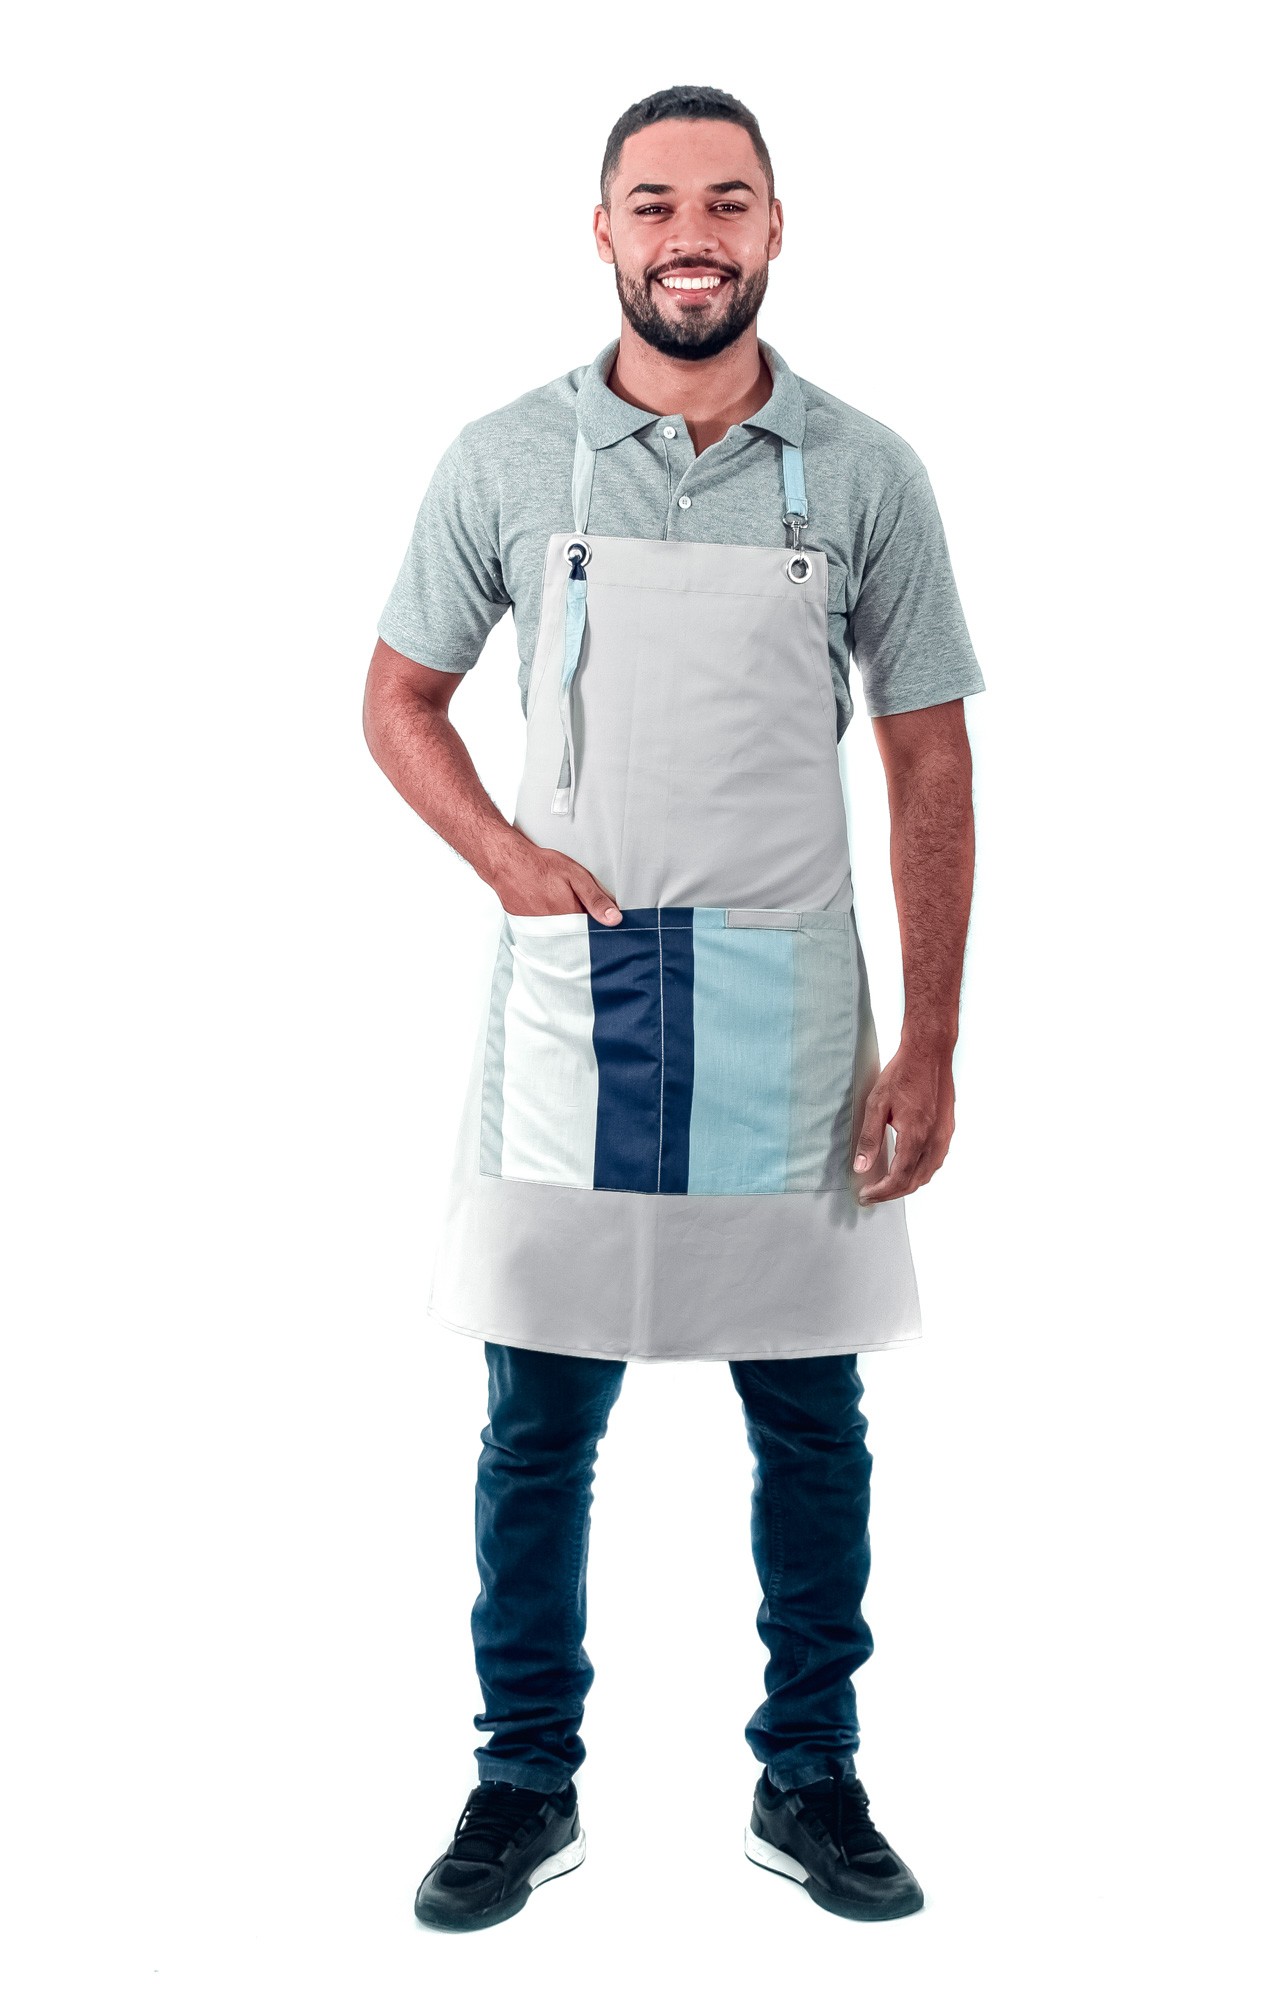 Antigo_Avental de Frente Masculino Sumaia Patrick, Com Bolsos e Regulagem Para Profissionais da Cozinha - Listra Azul